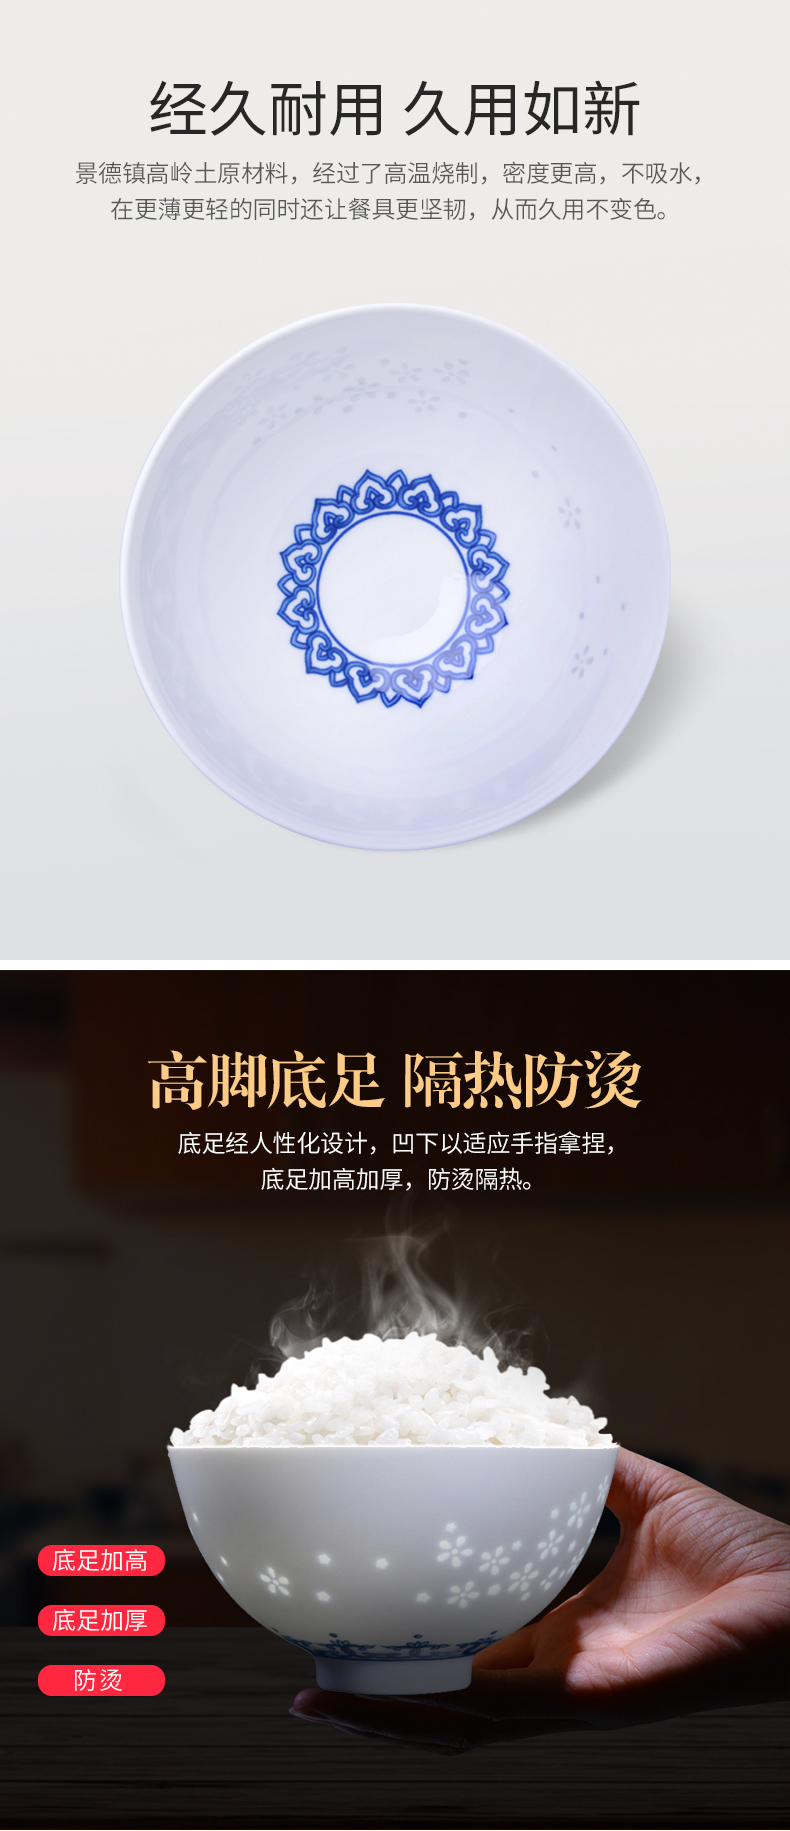 景德镇古镇陶瓷 6只青花玲珑小足碗套装 防烫碗 家用中式小碗 饭碗 创意餐具套装